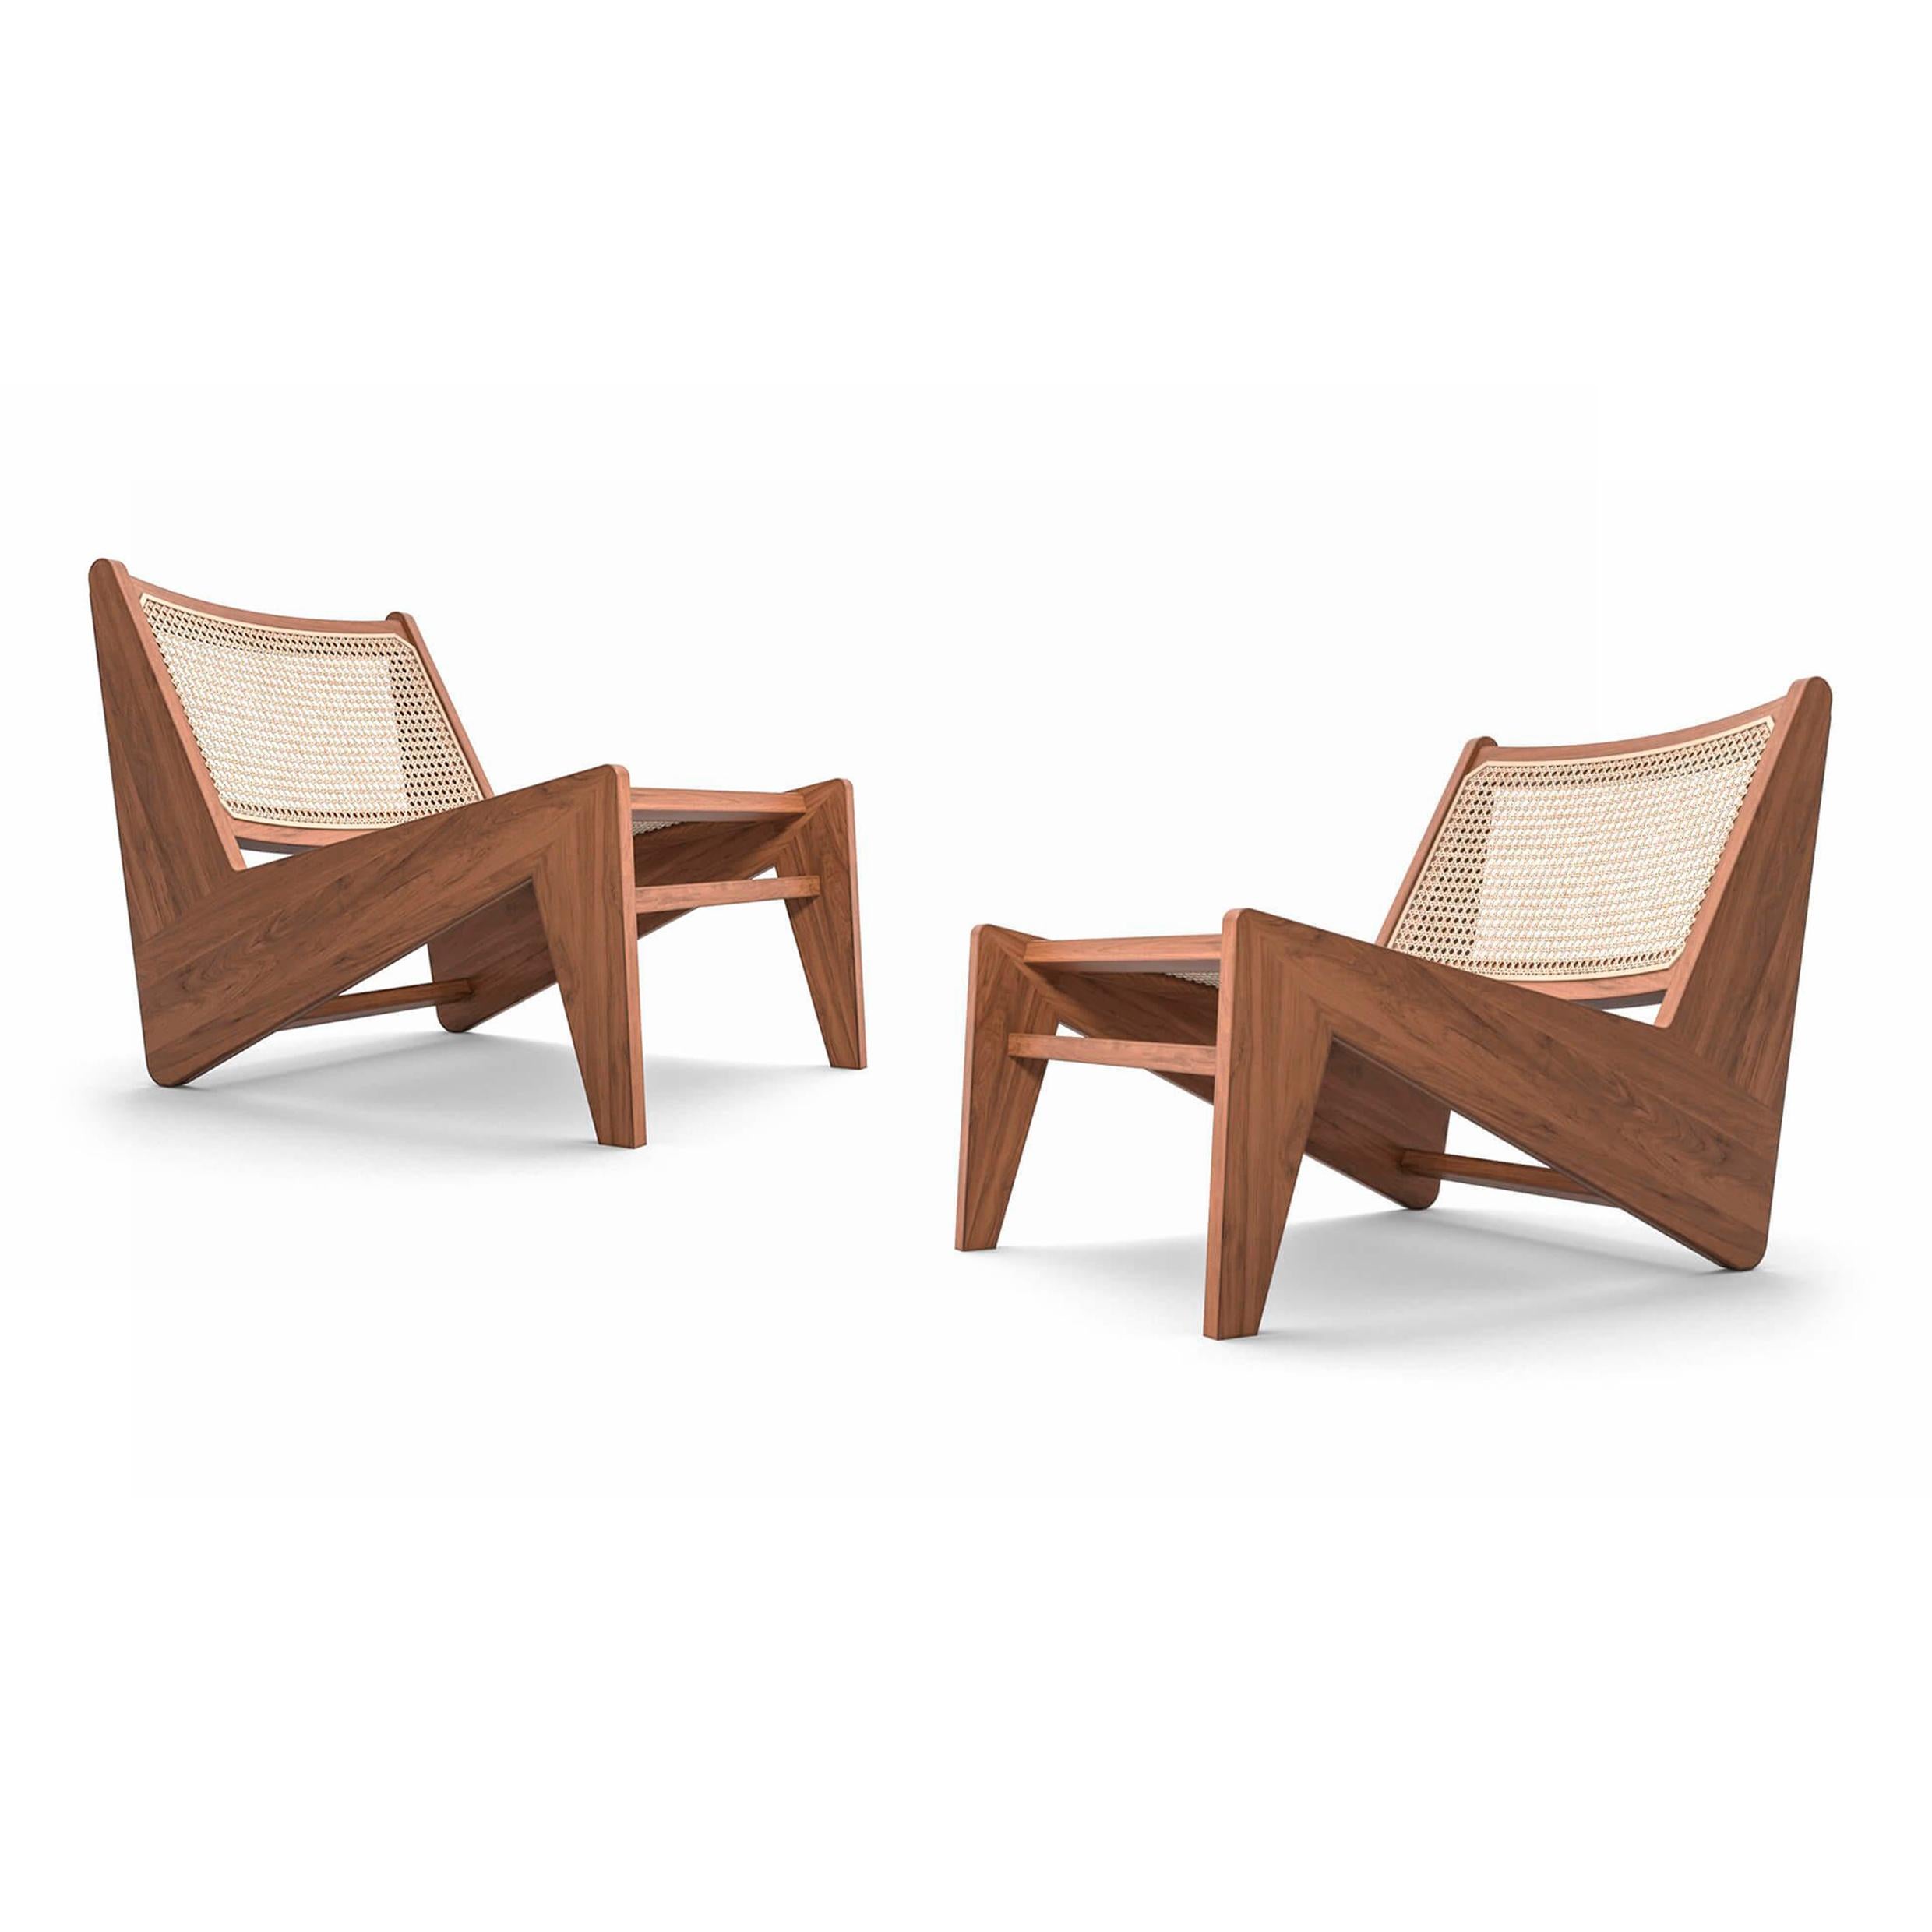 Sessel, entworfen von Pierre Jeanneret um 1955, neu aufgelegt im Jahr 2020.
Hergestellt von Cassina in Italien.

Cassina setzt seine Studie über die Möbel der Stadt Chandigarh fort und fügt der Collection'S Hommage à Pierre Jeanneret den